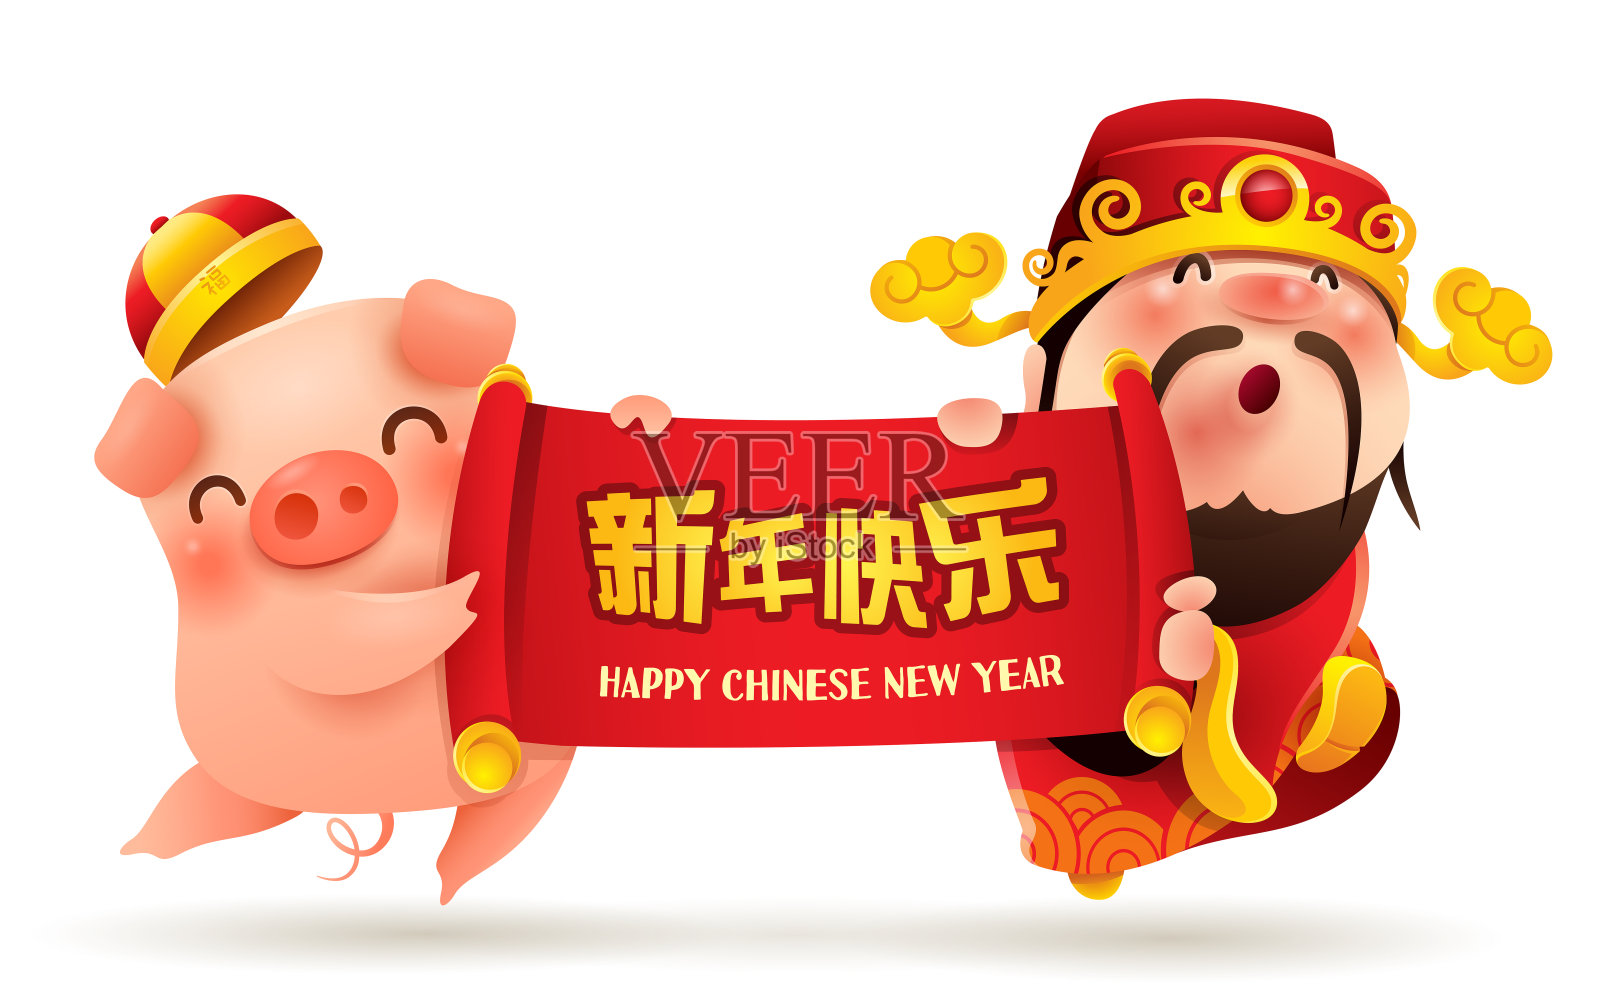 中国的财神和小猪。中国新年。猪年到了。翻译:新年快乐。设计模板素材